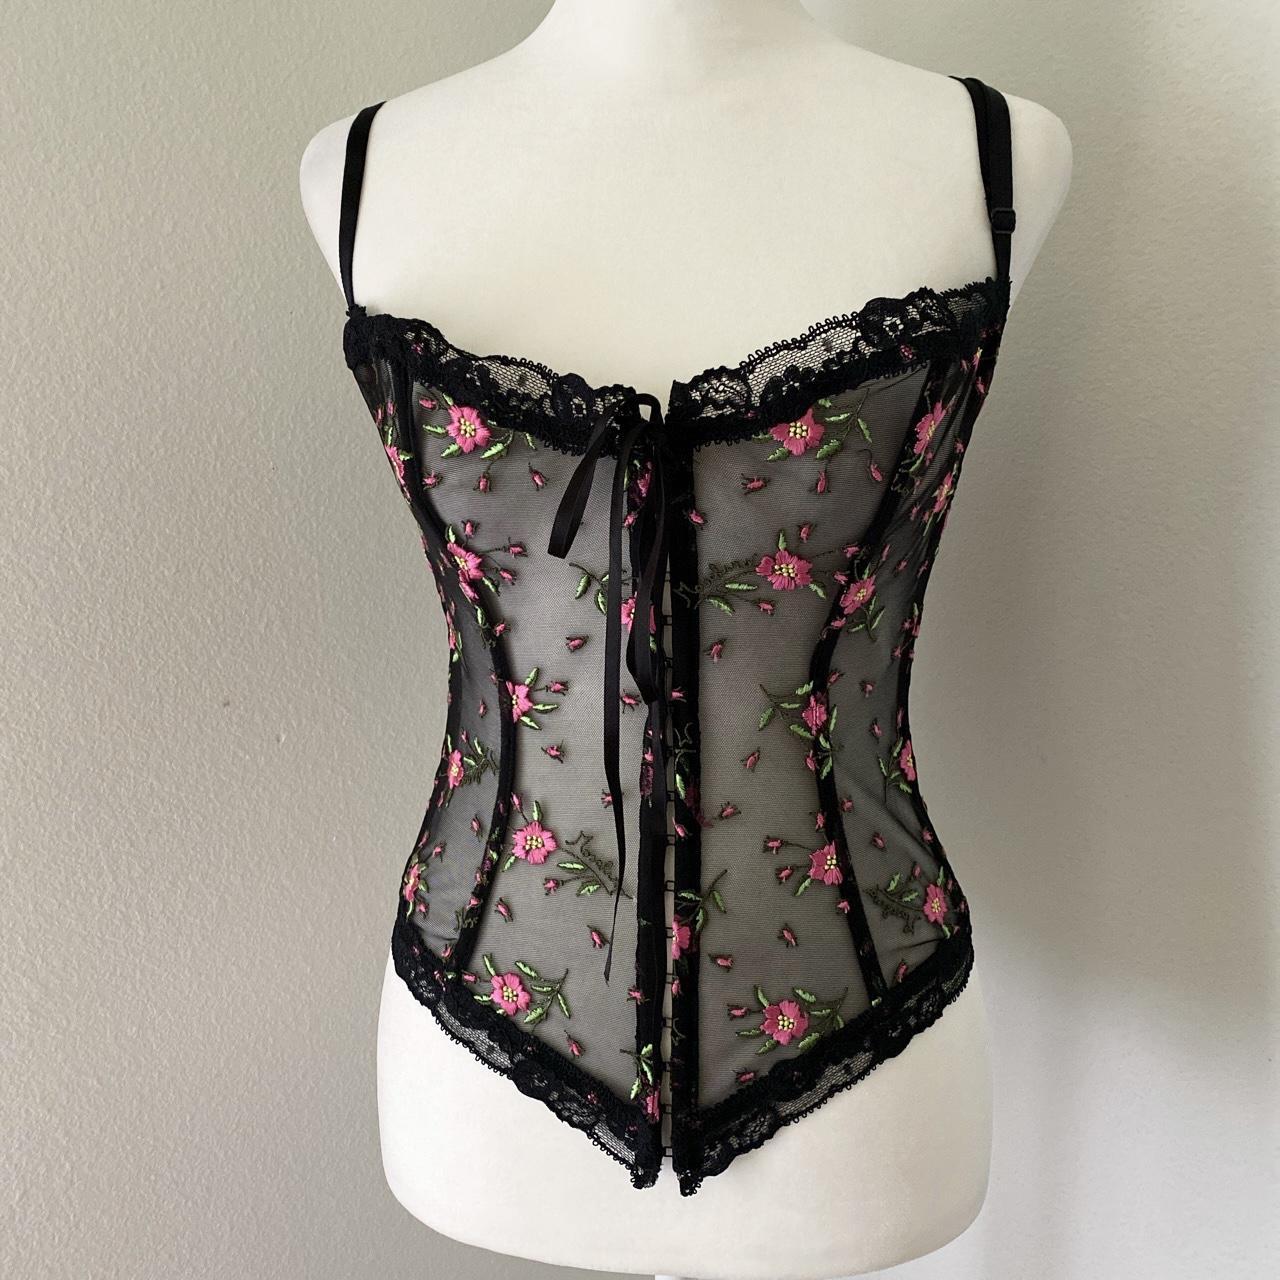 Vintage black floral corset top , Floral embroidered